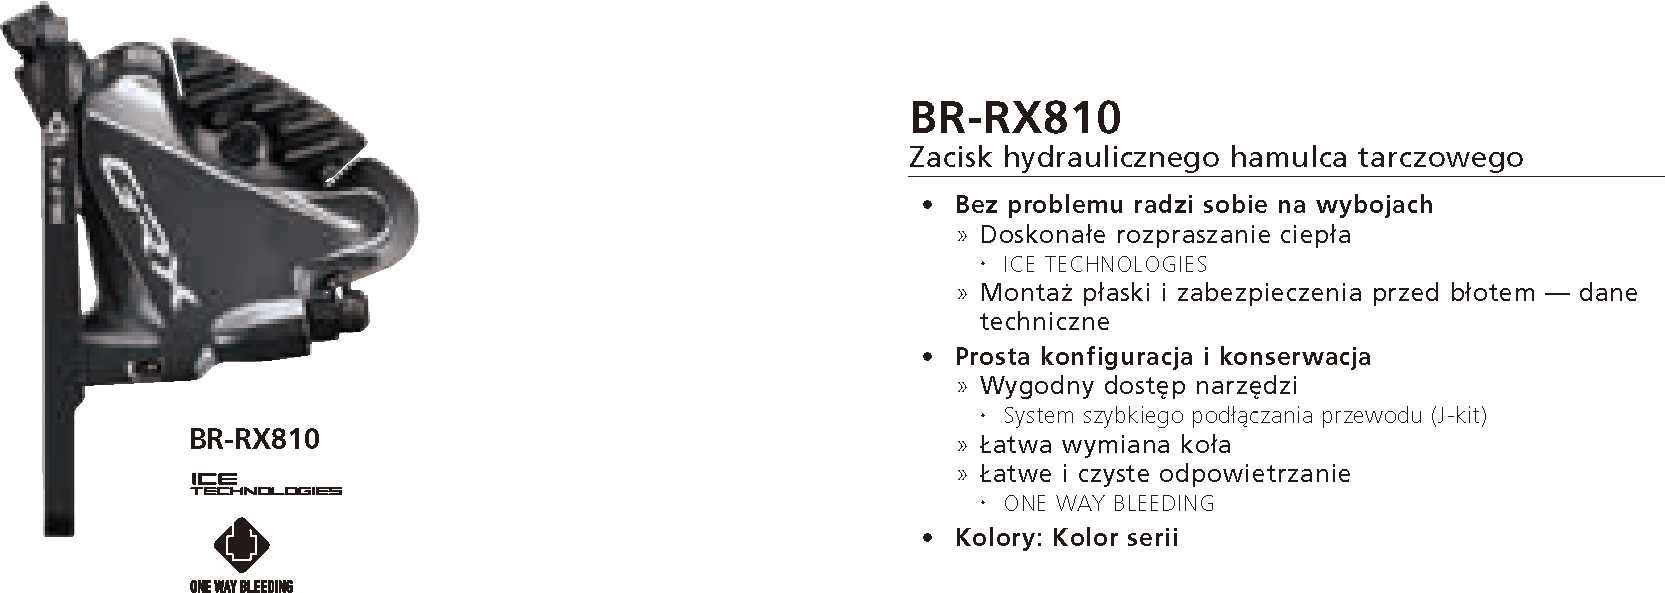 Zacisk hamulca tarczowego Shimano GRX BR-RX810